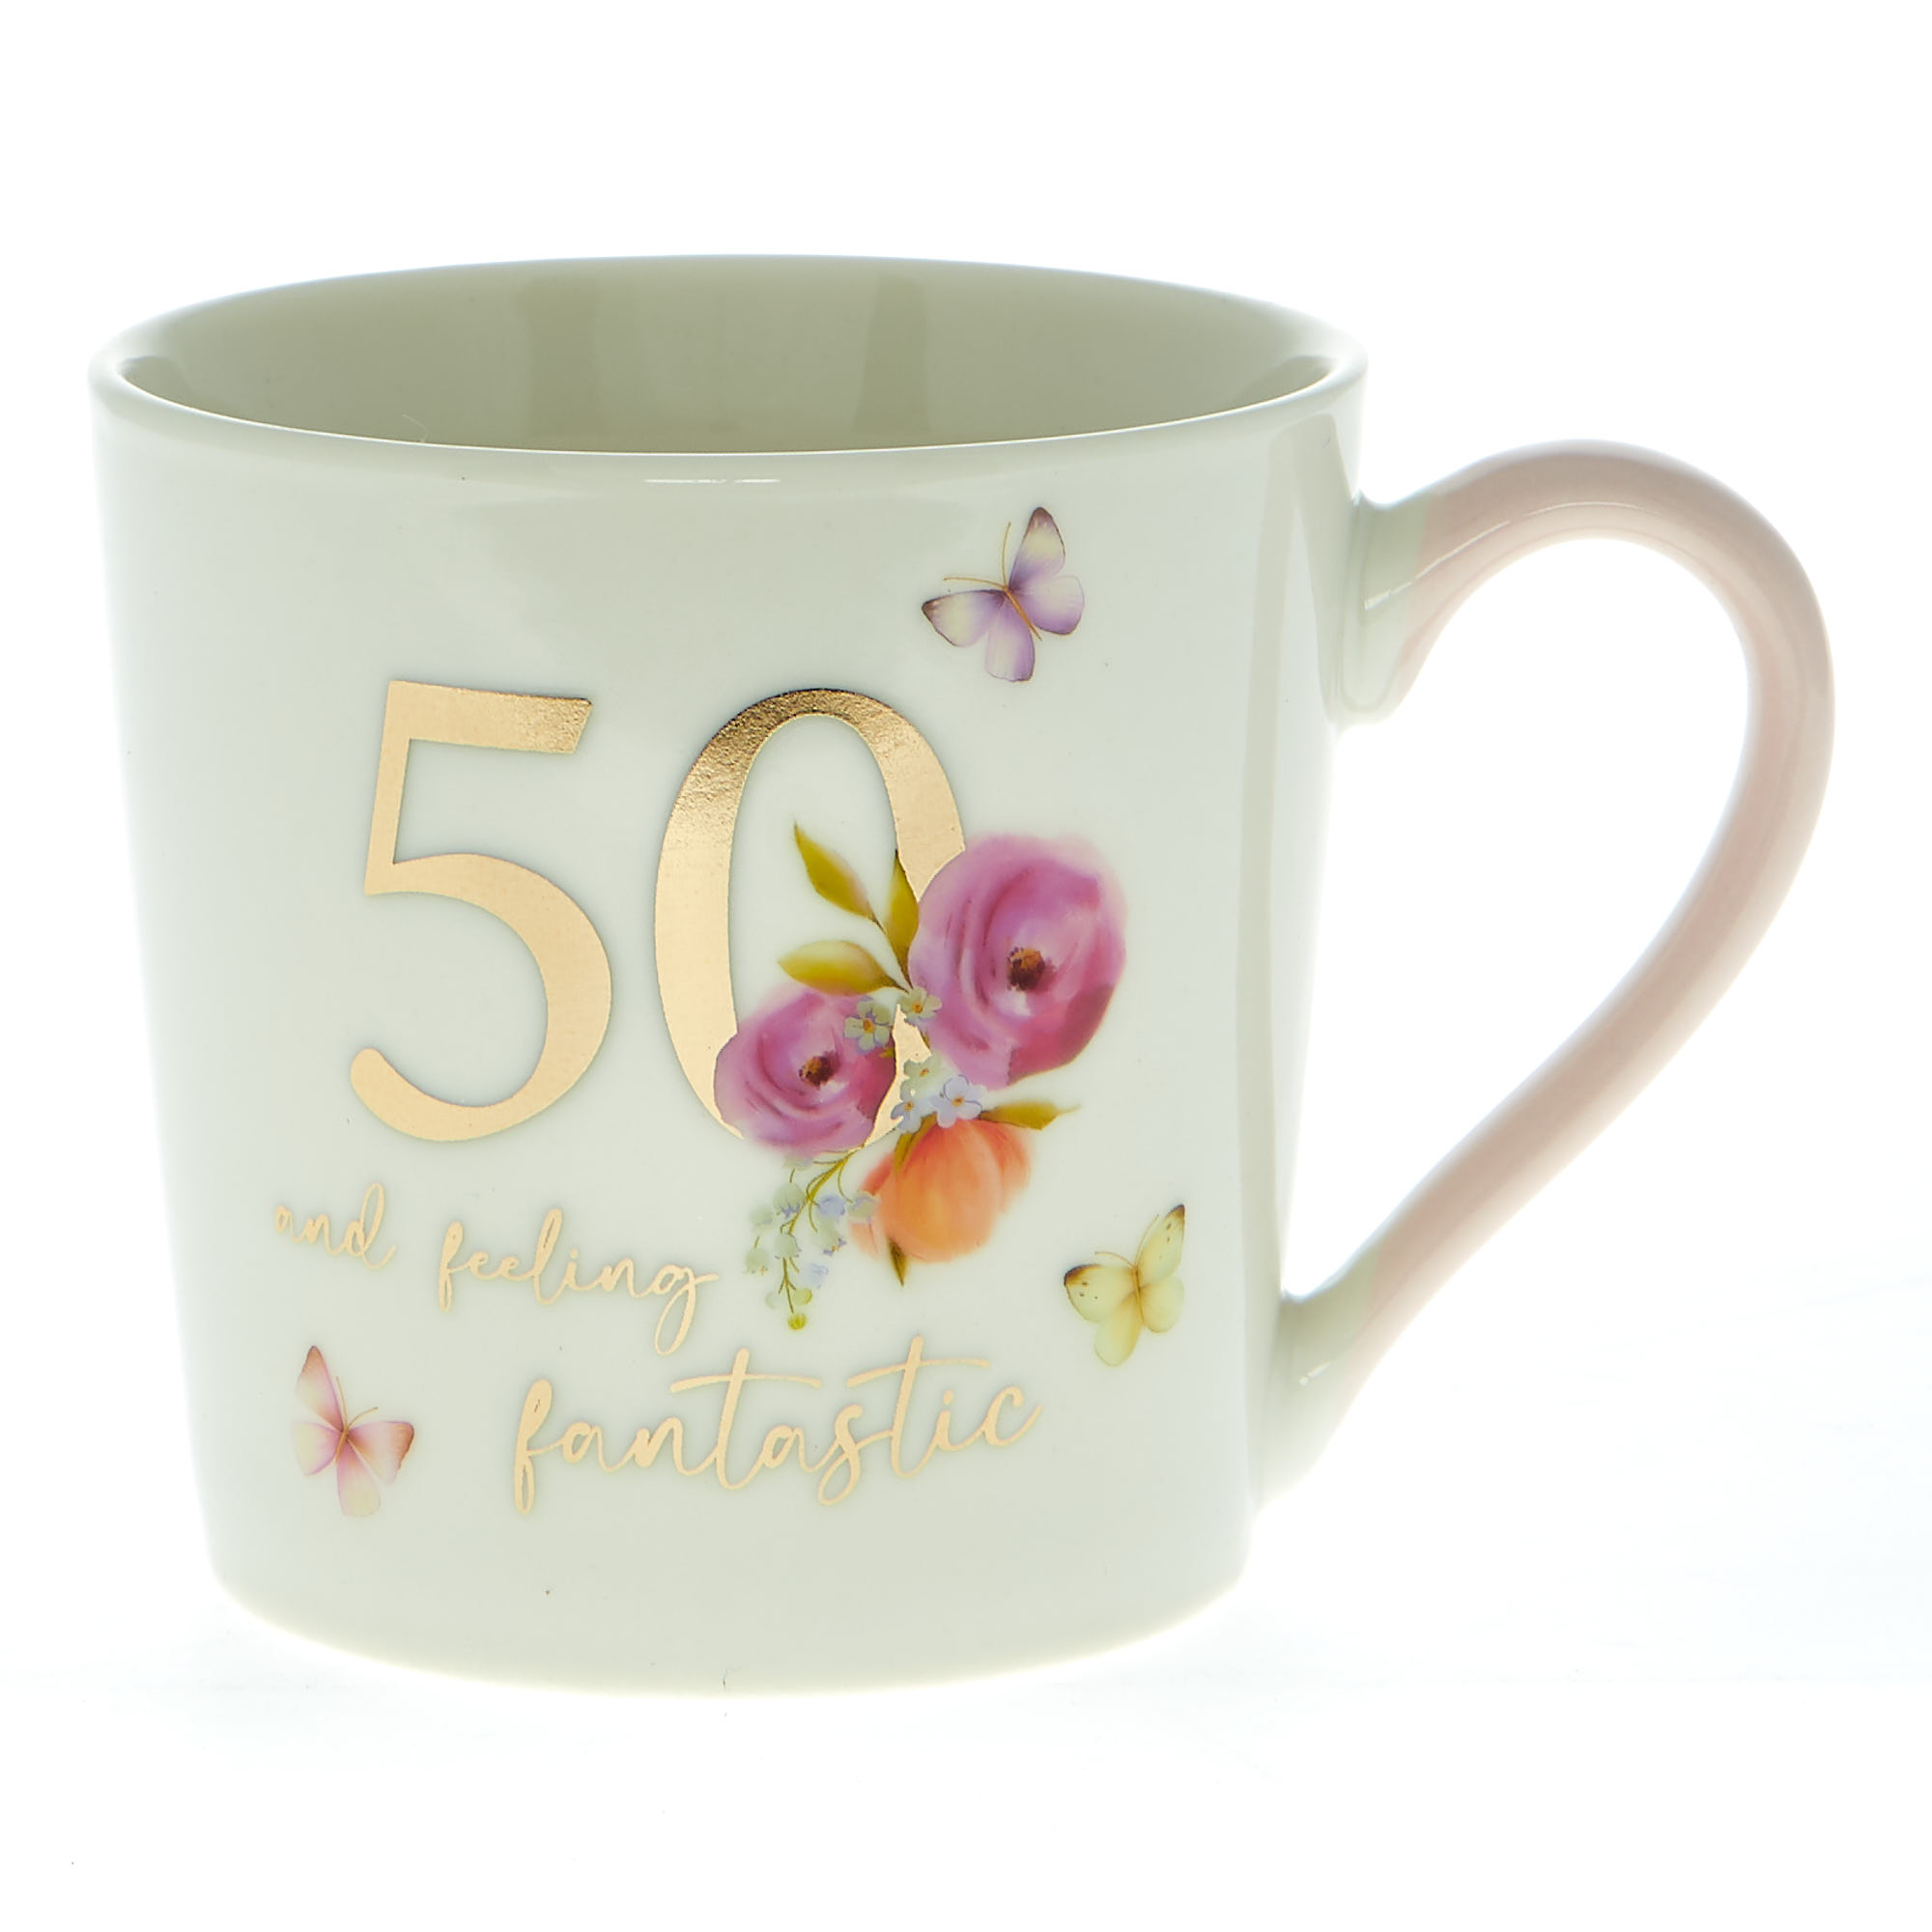 50 & Feeling Fantastic Mug